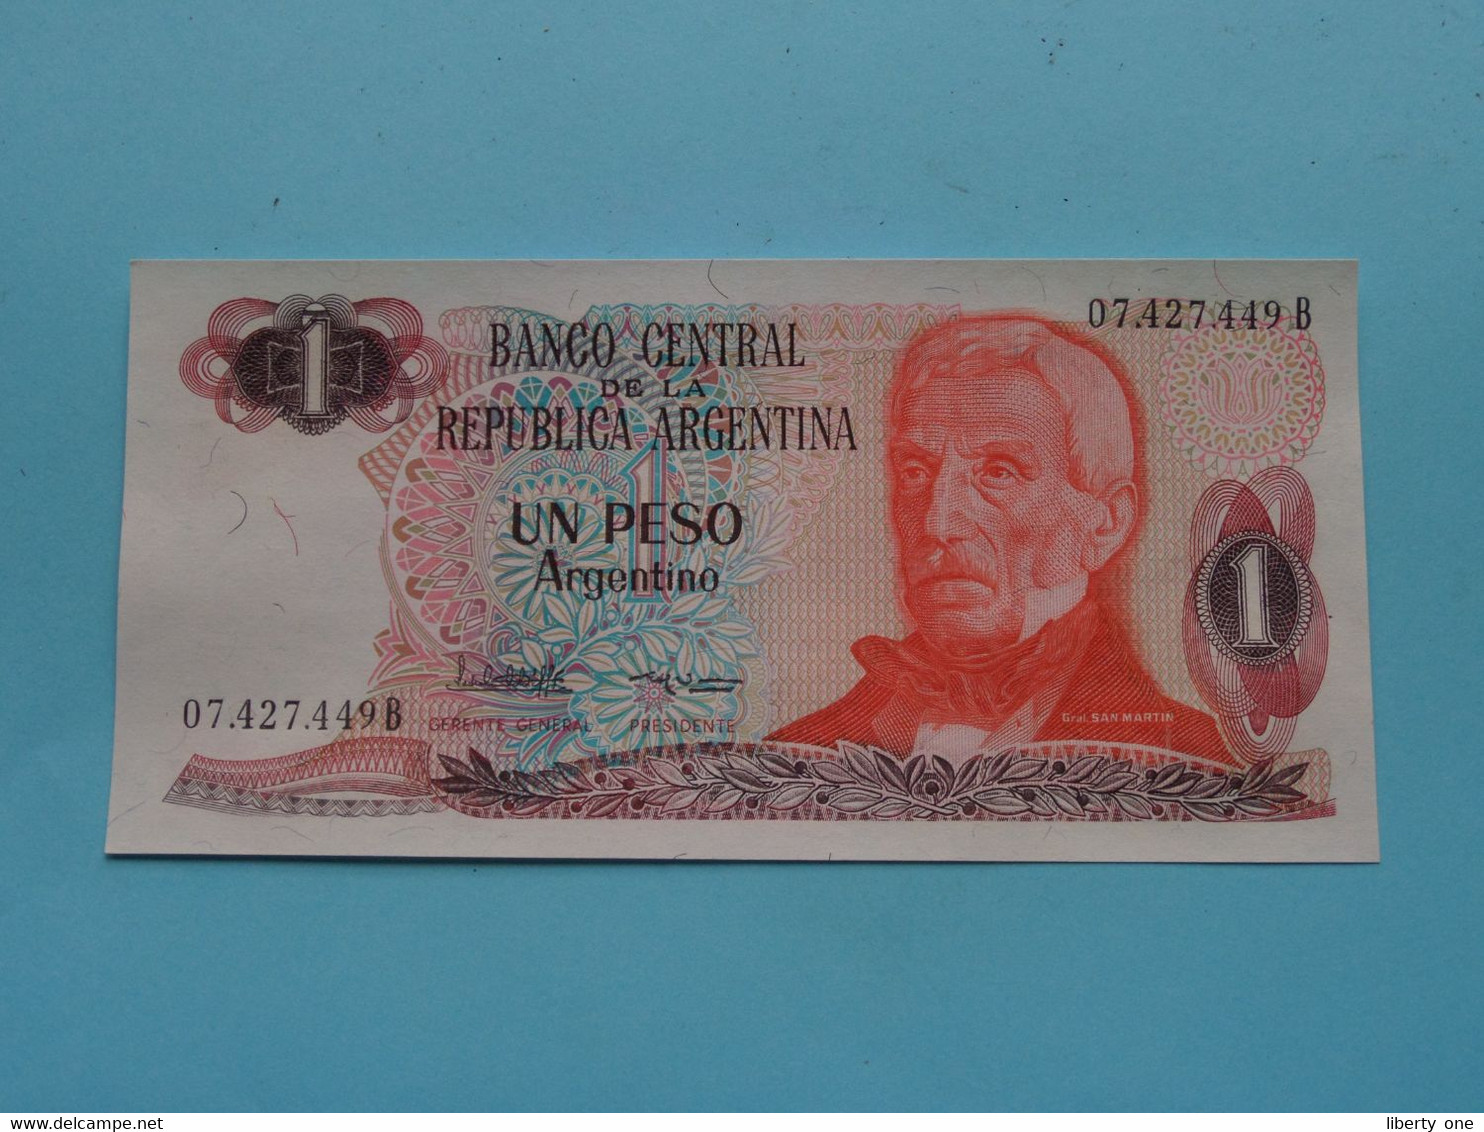 UN PESO Argentino (07.427.449 B) Banco Central De La Republica ARGENTINA ( For Grade, Please See Photo ) UNC ! - Argentina